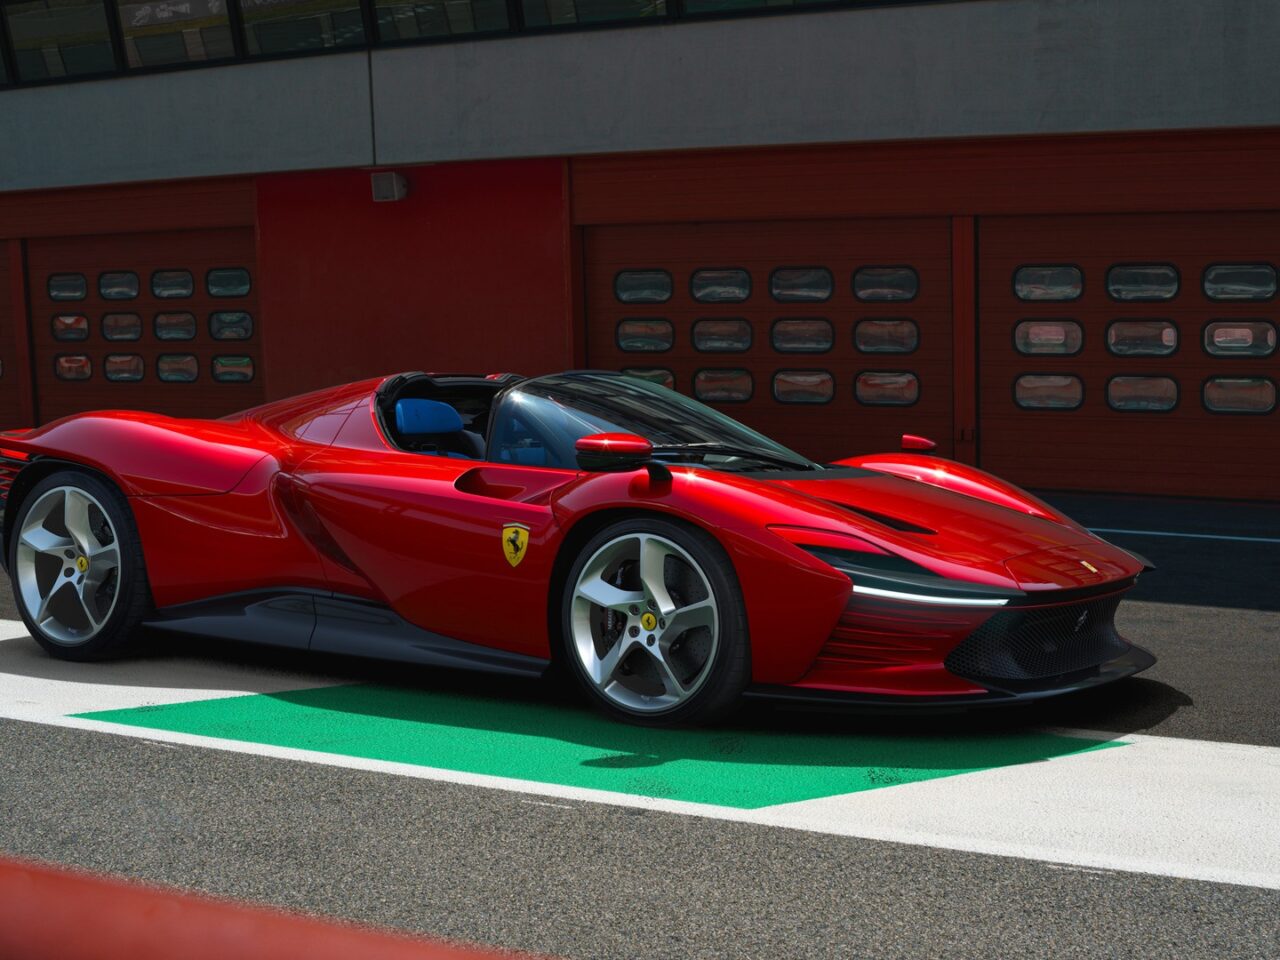 Elektryczne Ferrari. Czerwony samochód sportowy marki Ferrari zaparkowany na tle czerwonej ściany z przejściem dla pieszych w kolorach białym i zielonym.